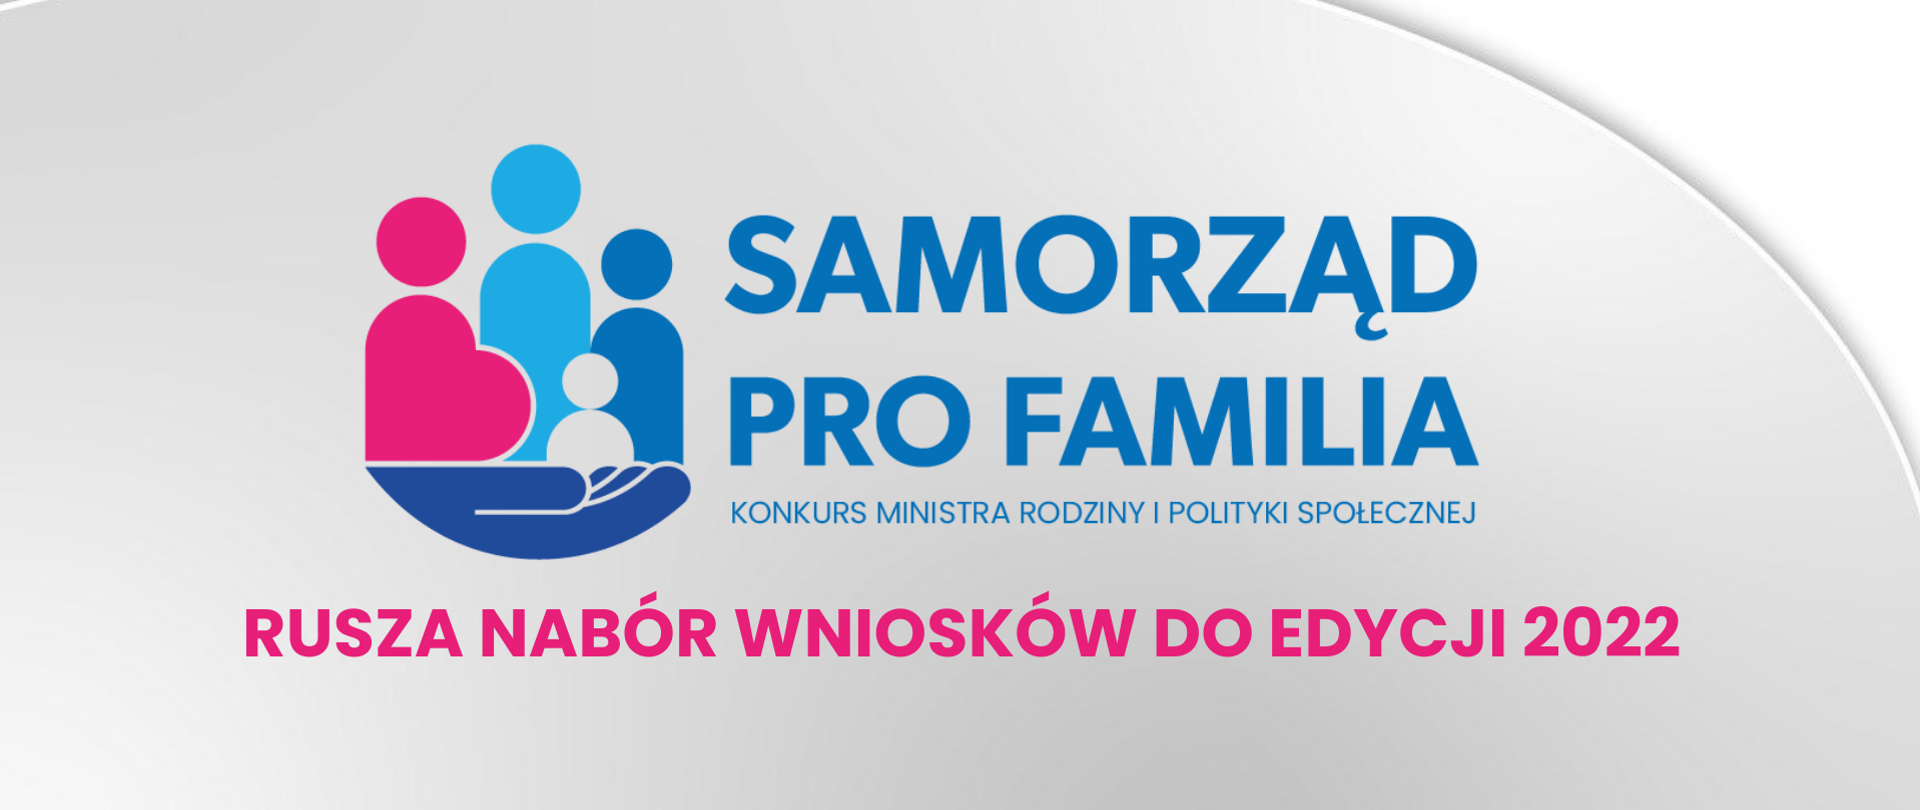 Grafika przedstawiająca plakat konkurs ProFamilia Ministra Rodziny i Polityki Społecznej. Szare tło z logo programu.